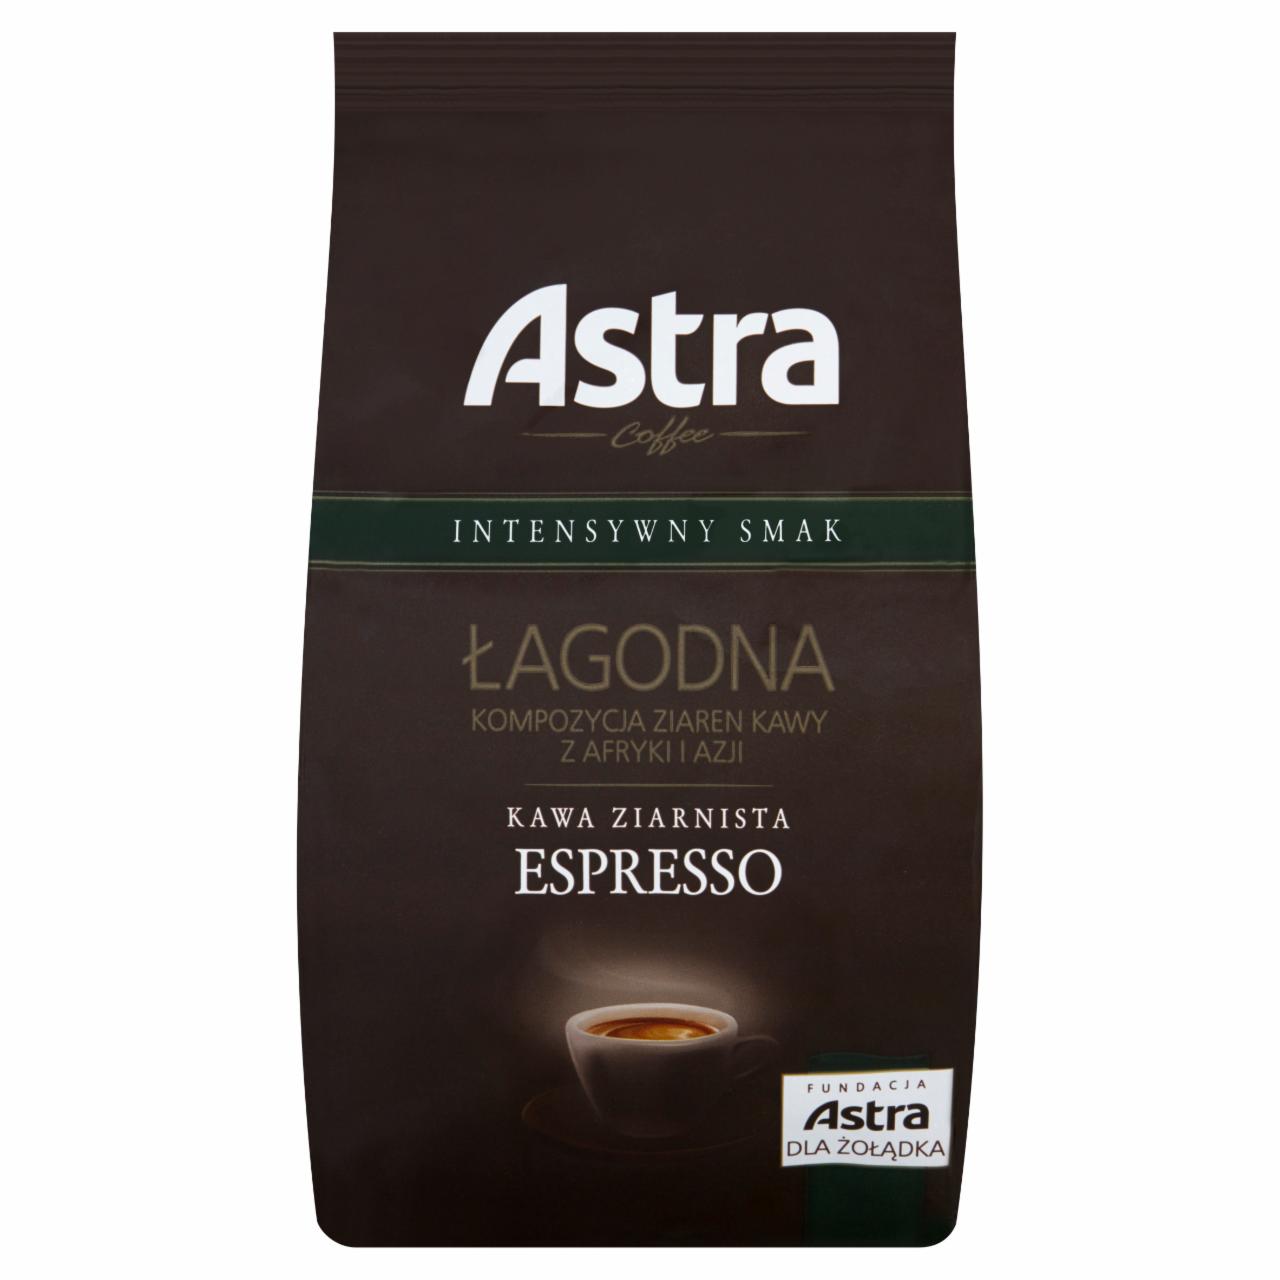 Zdjęcia - Astra Łagodna Intensywny smak Espresso Kawa ziarnista 500 g